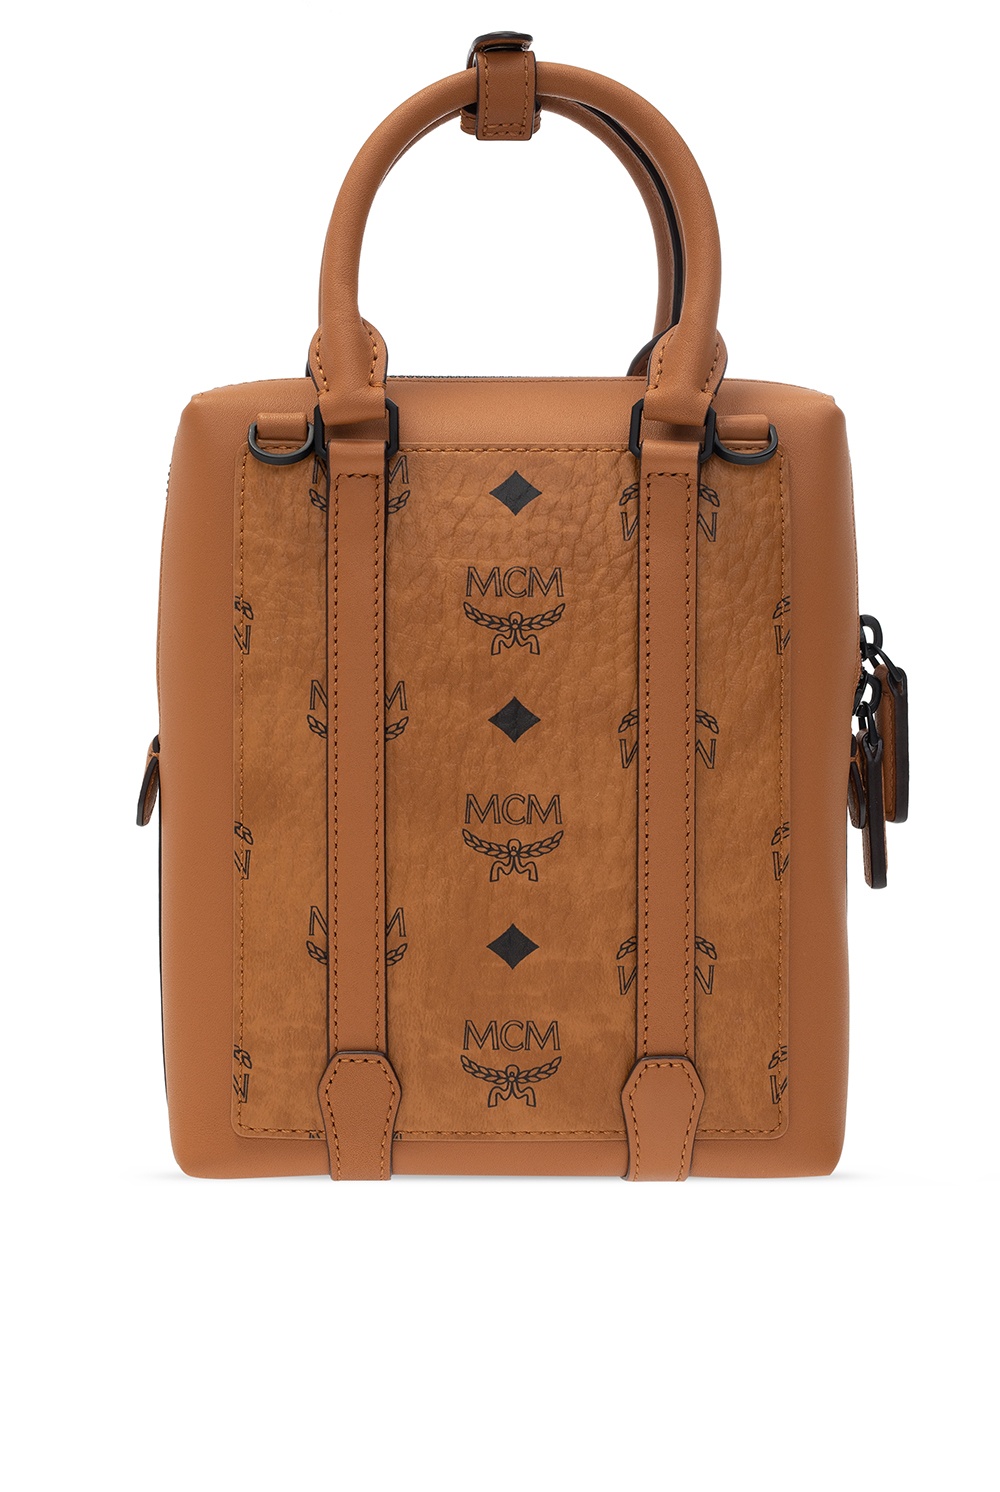 MCM Branded shoulder bag